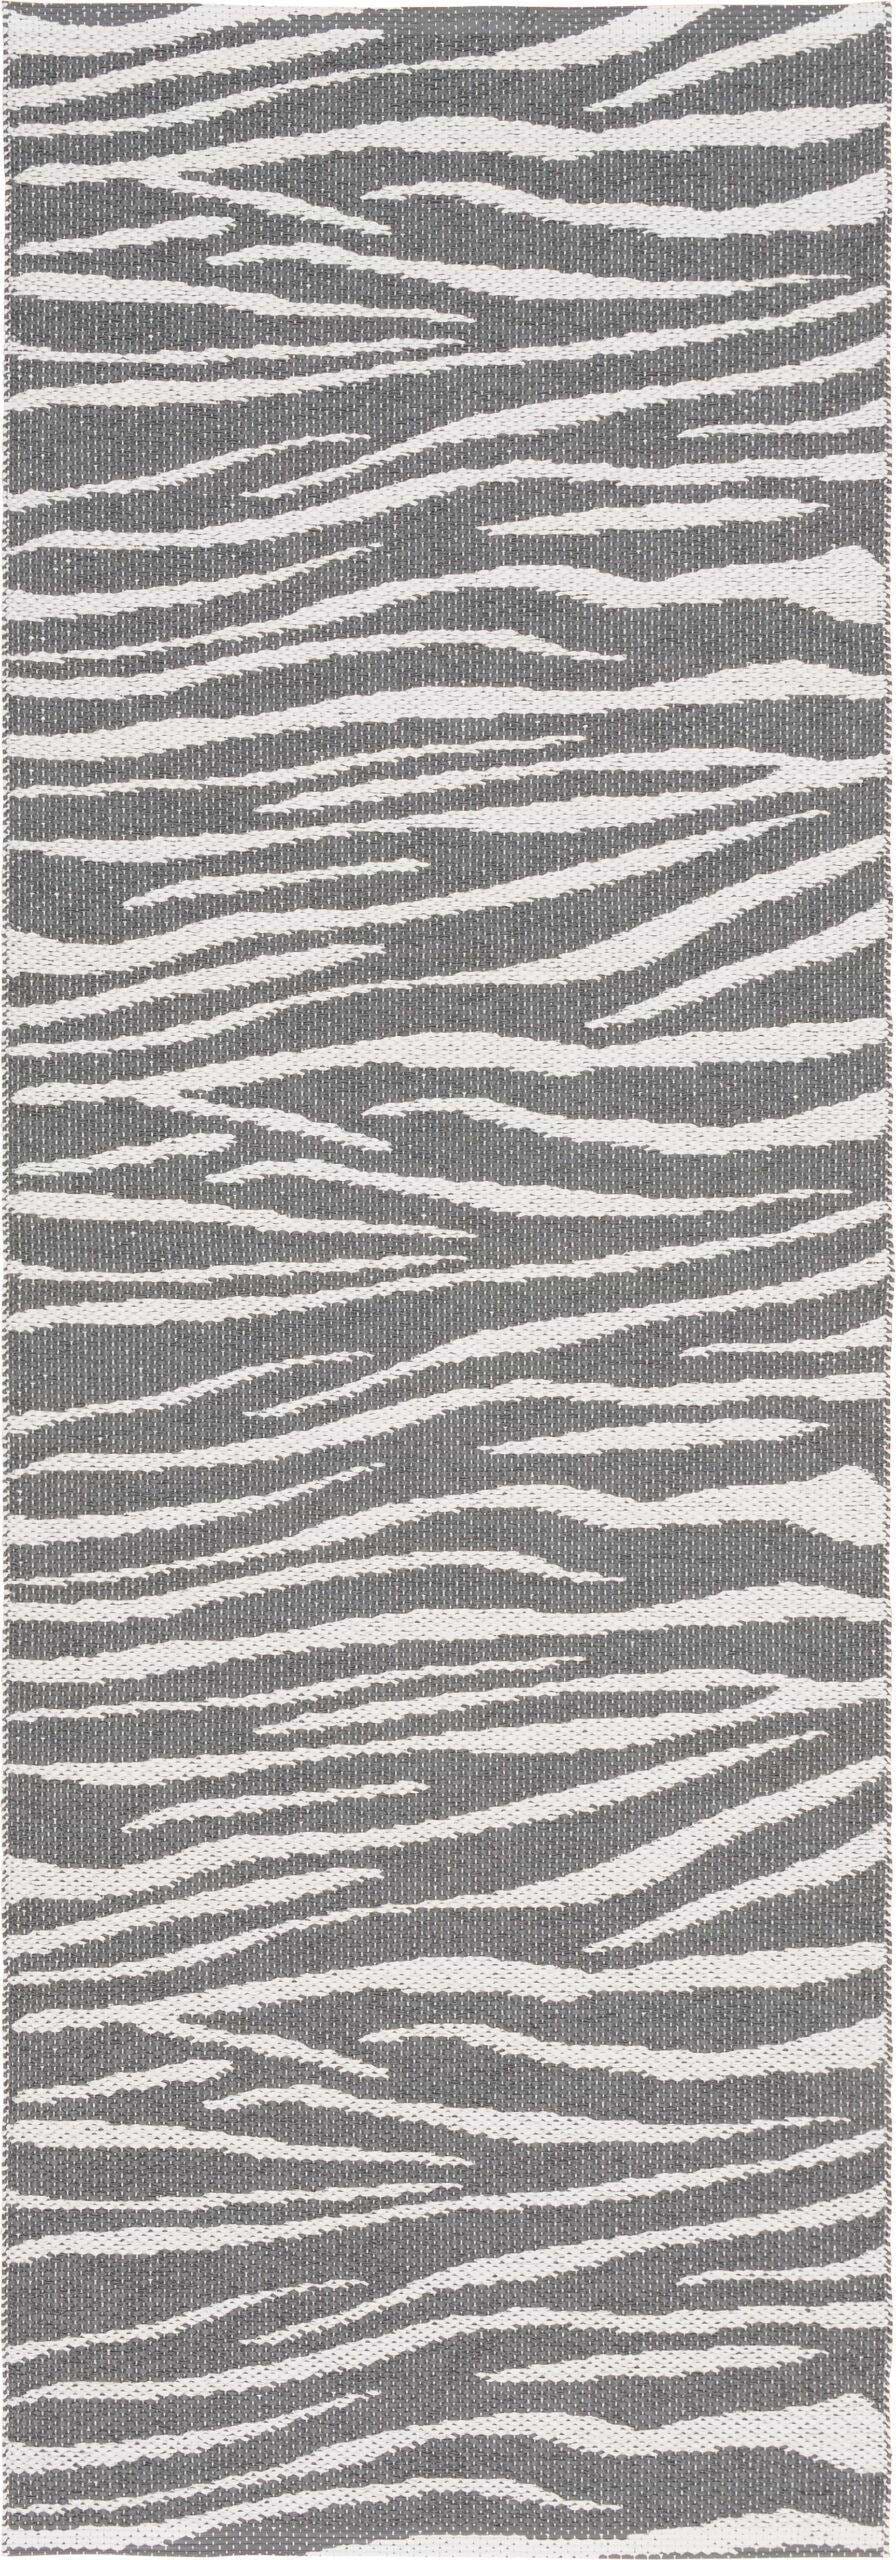 Carpets & More :: Dywan zewnętrzny Zebra szary